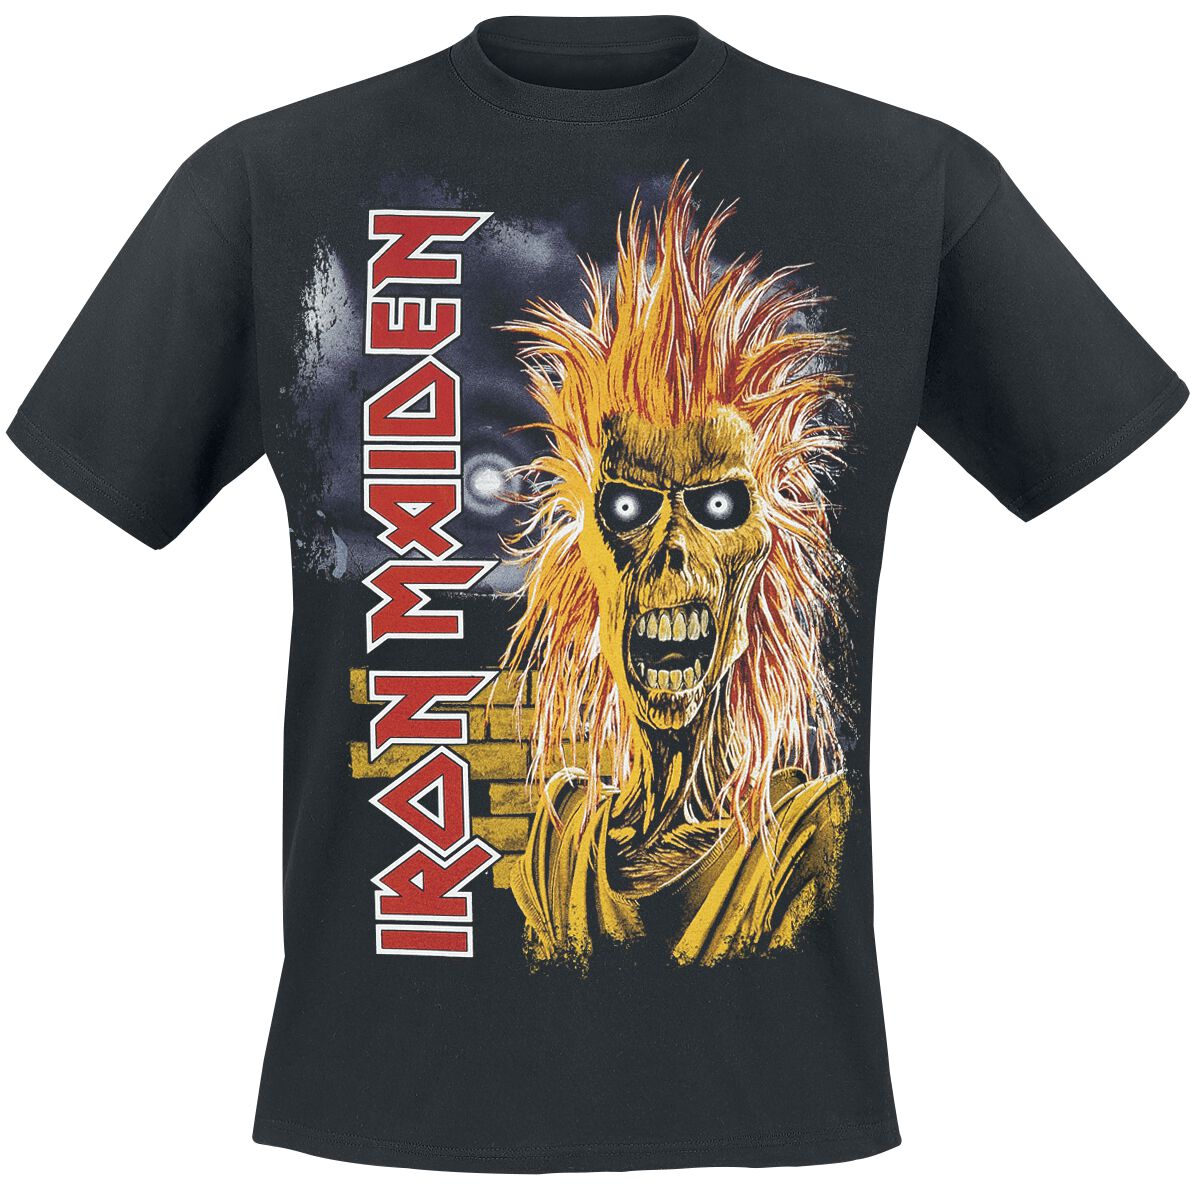 Iron Maiden 1st Album Tracklist T-Shirt schwarz in 5XL